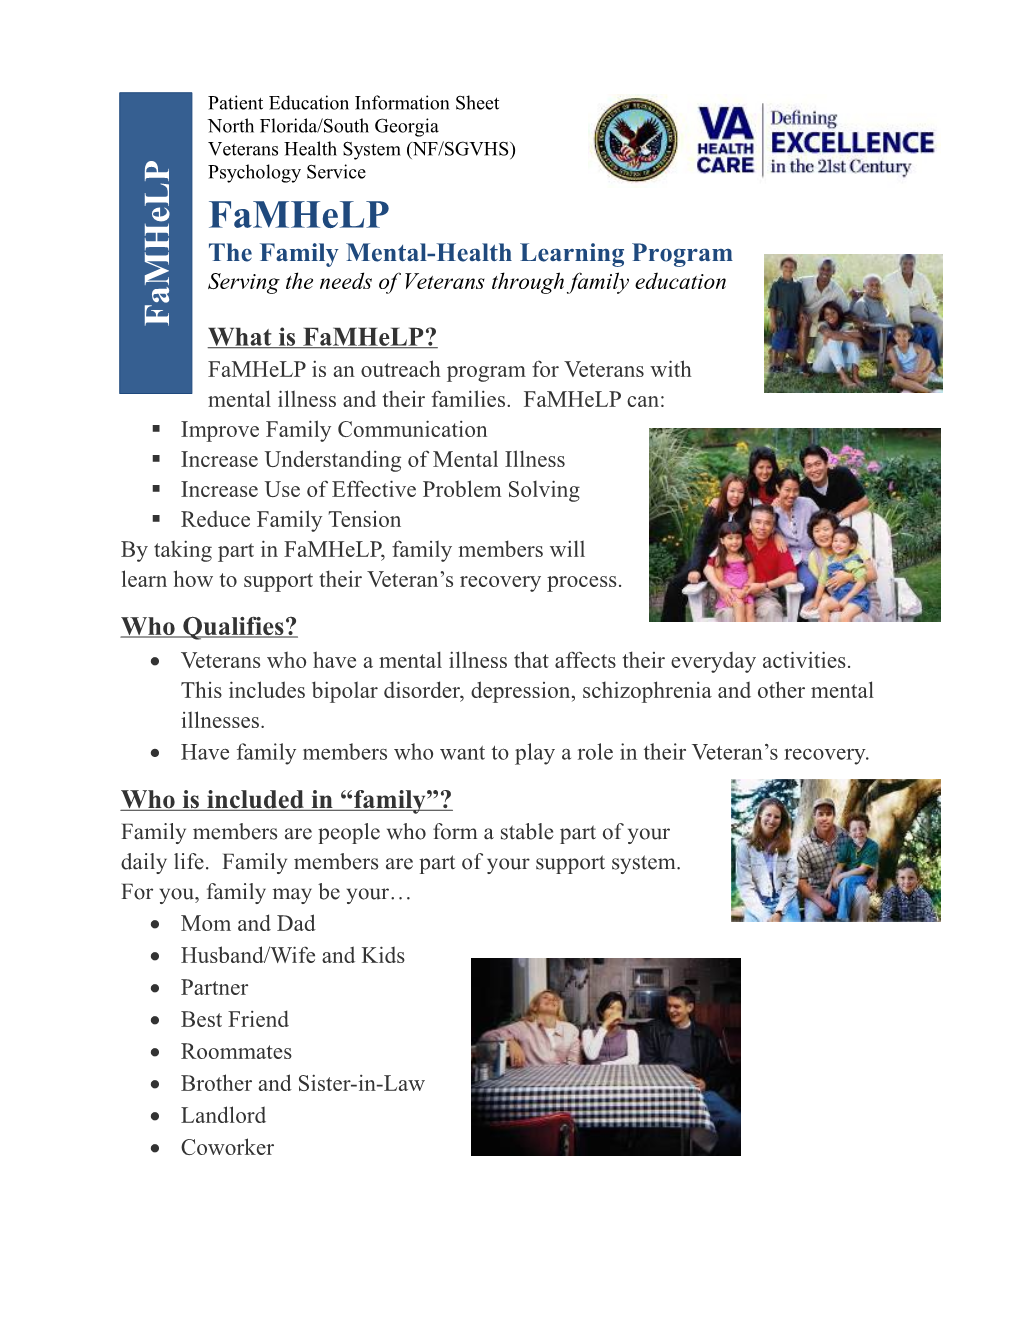 Family Mental Health Learning Program - Famhelp (NF/SGVHS)